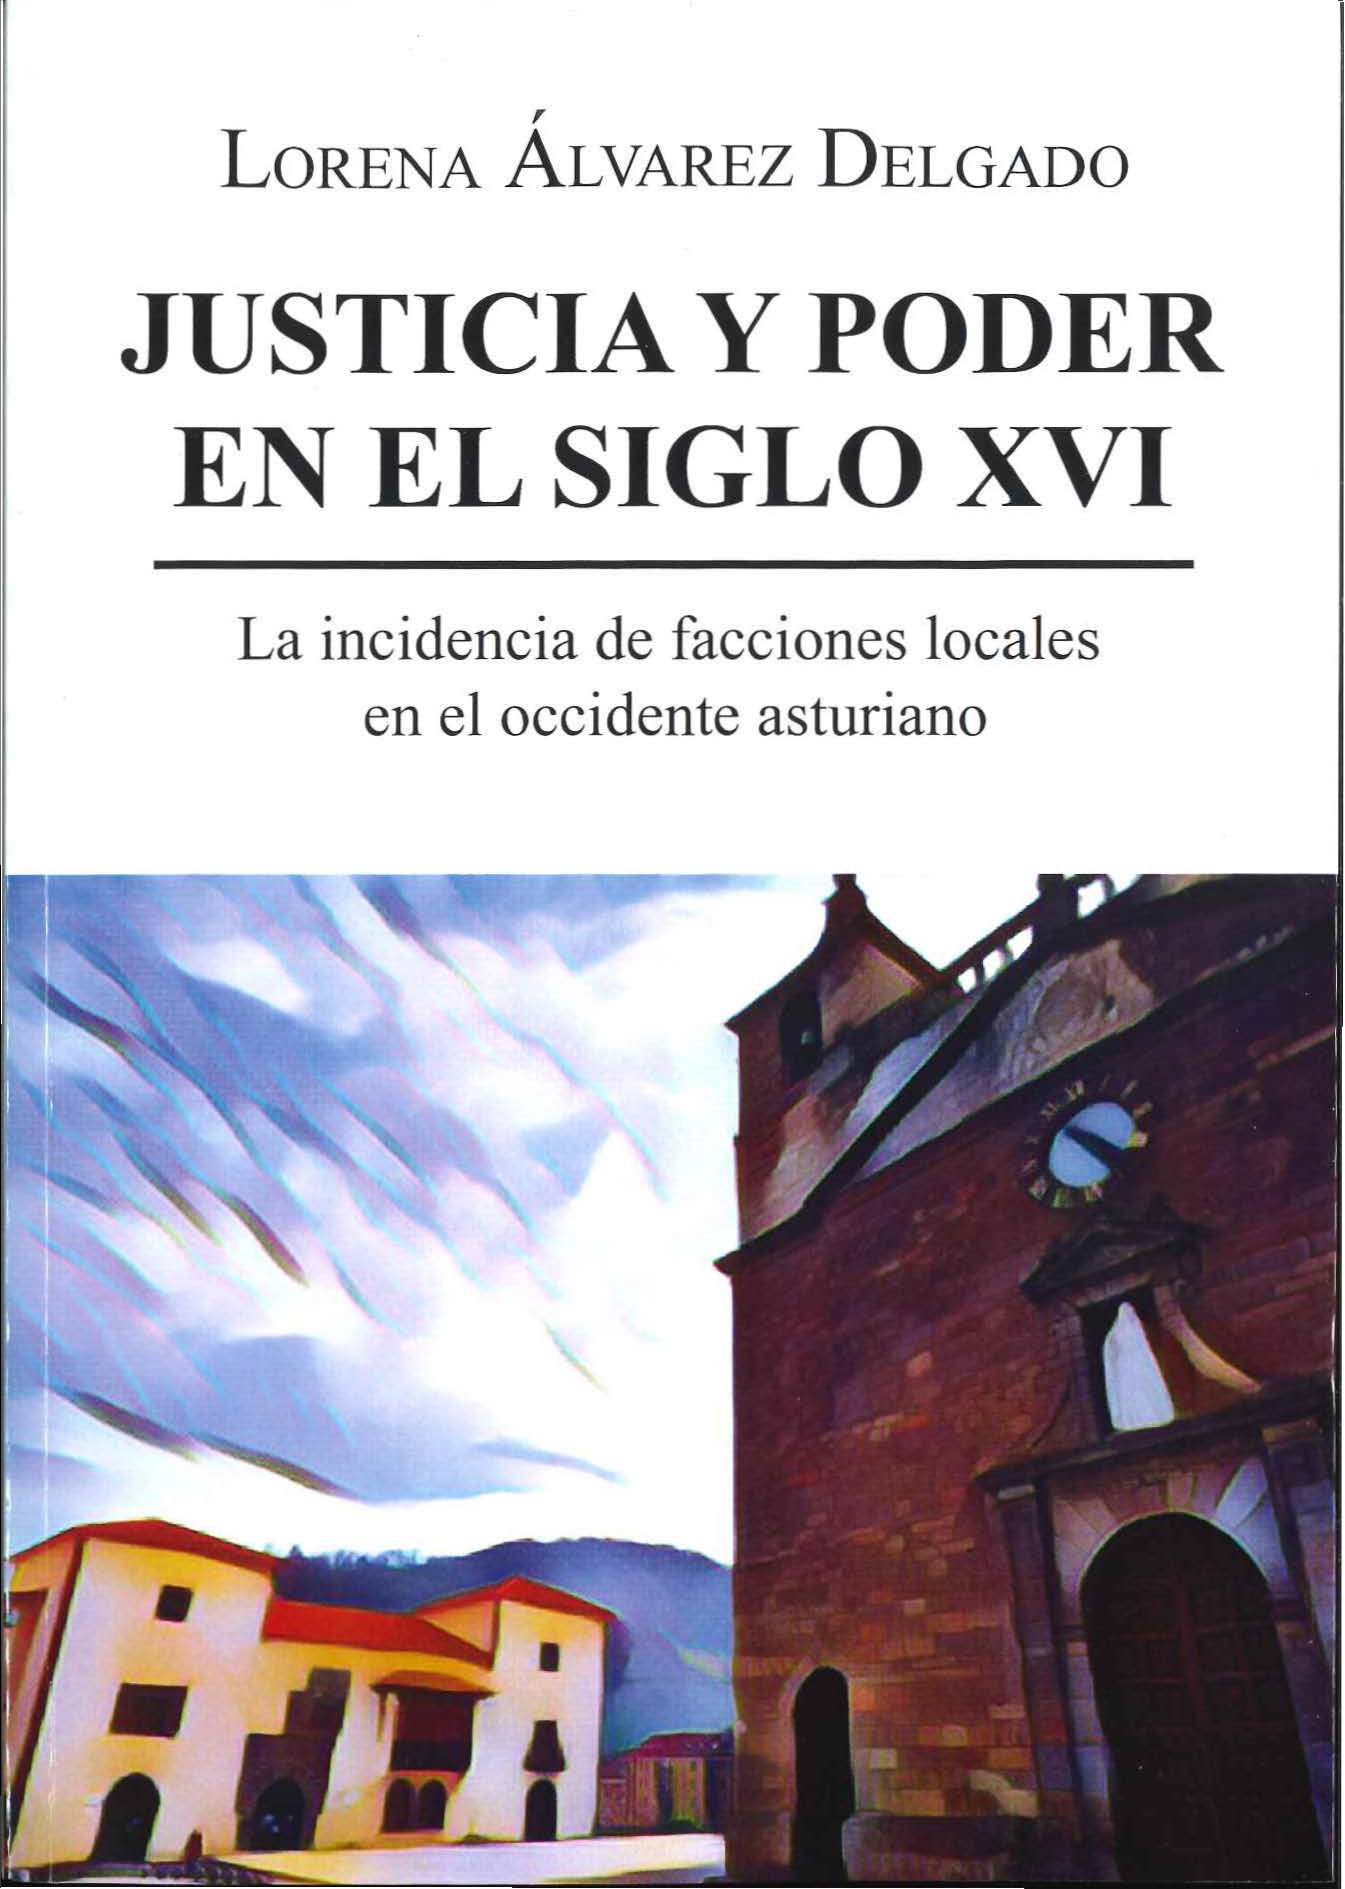 Portada del libro de Lorena Álvarez Delgado: "Justicia y poder en el Siglo XVI. La incidencia de facciones locales en el occidente asturiano"